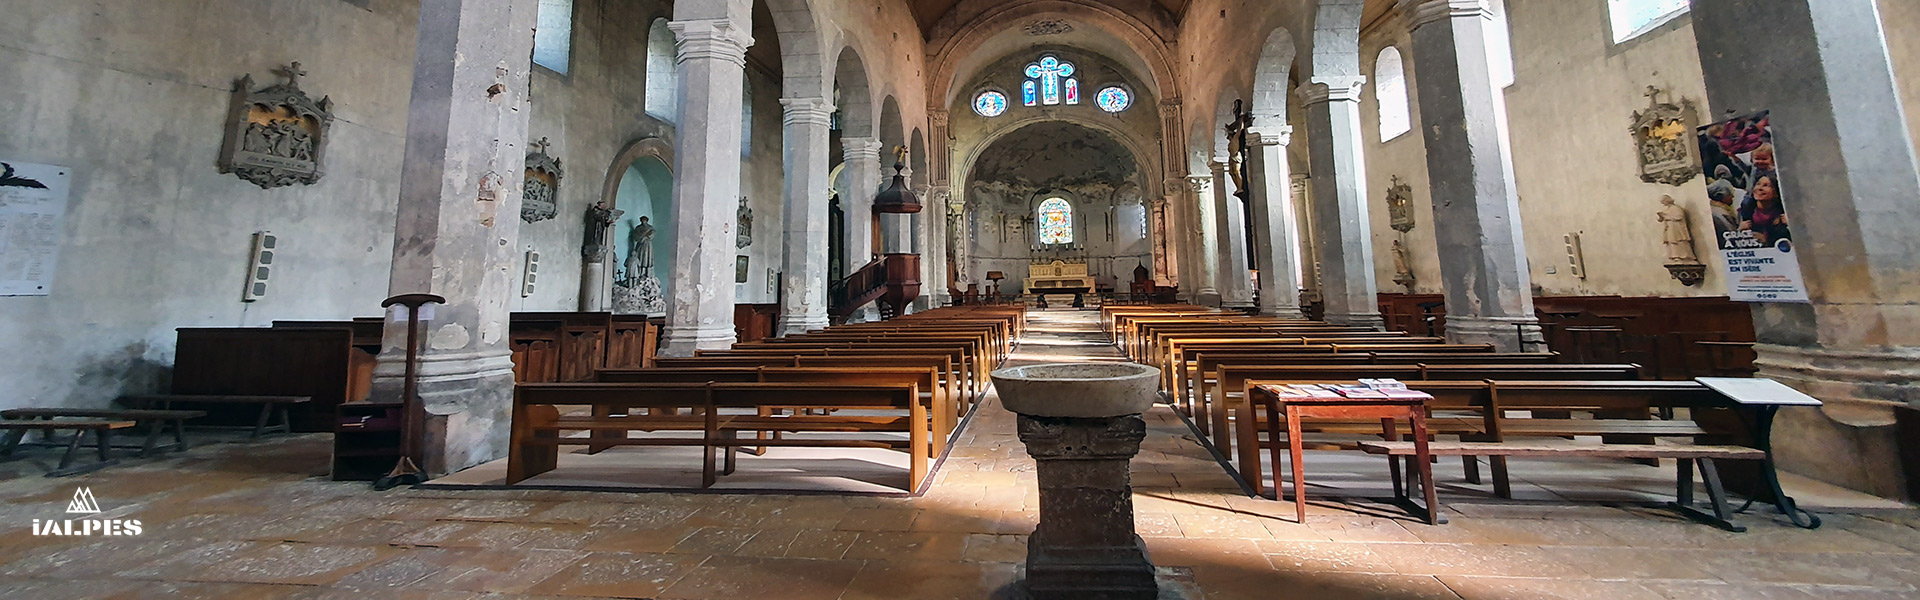 Abbatiale de Saint-Chef en Isère, Rhône-Alpes